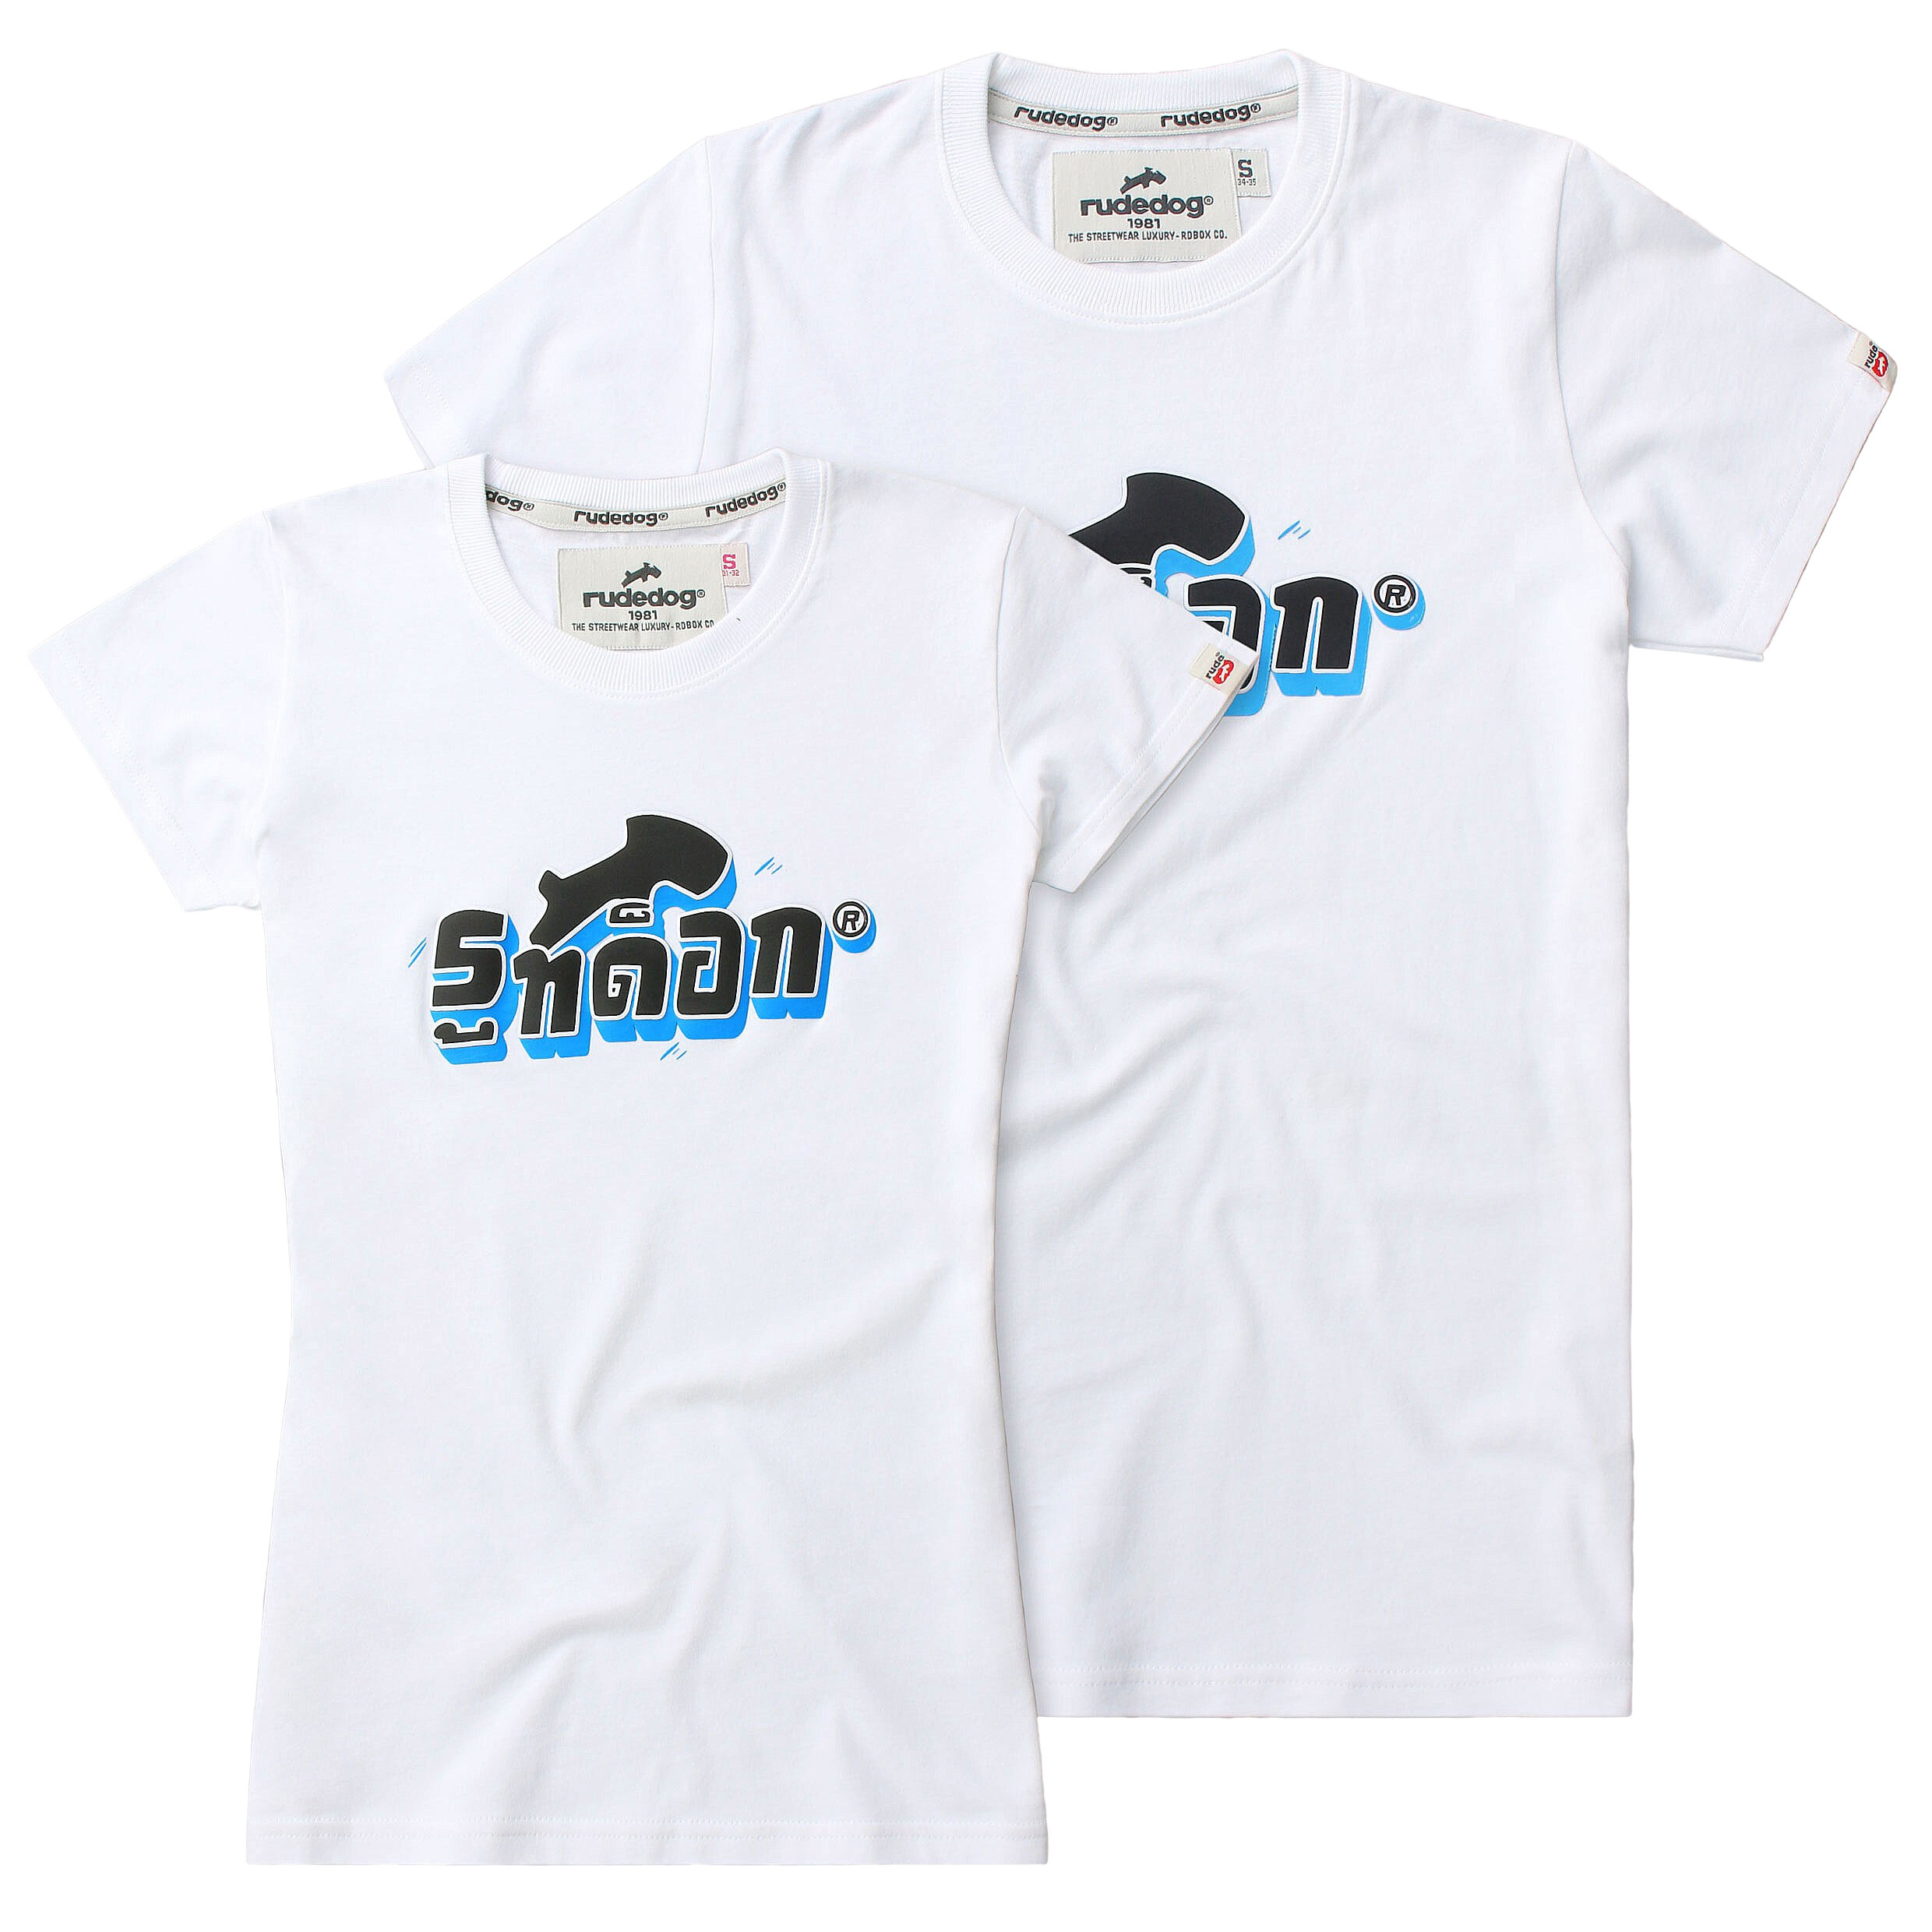 rudedog T-shirt เสื้อยืด รุ่น RD THAI (ผู้ชาย) แฟชั่น คอกลม ลายสกรีน ผ้าฝ้าย cotton ฟอกนุ่ม ไซส์ S M L XL